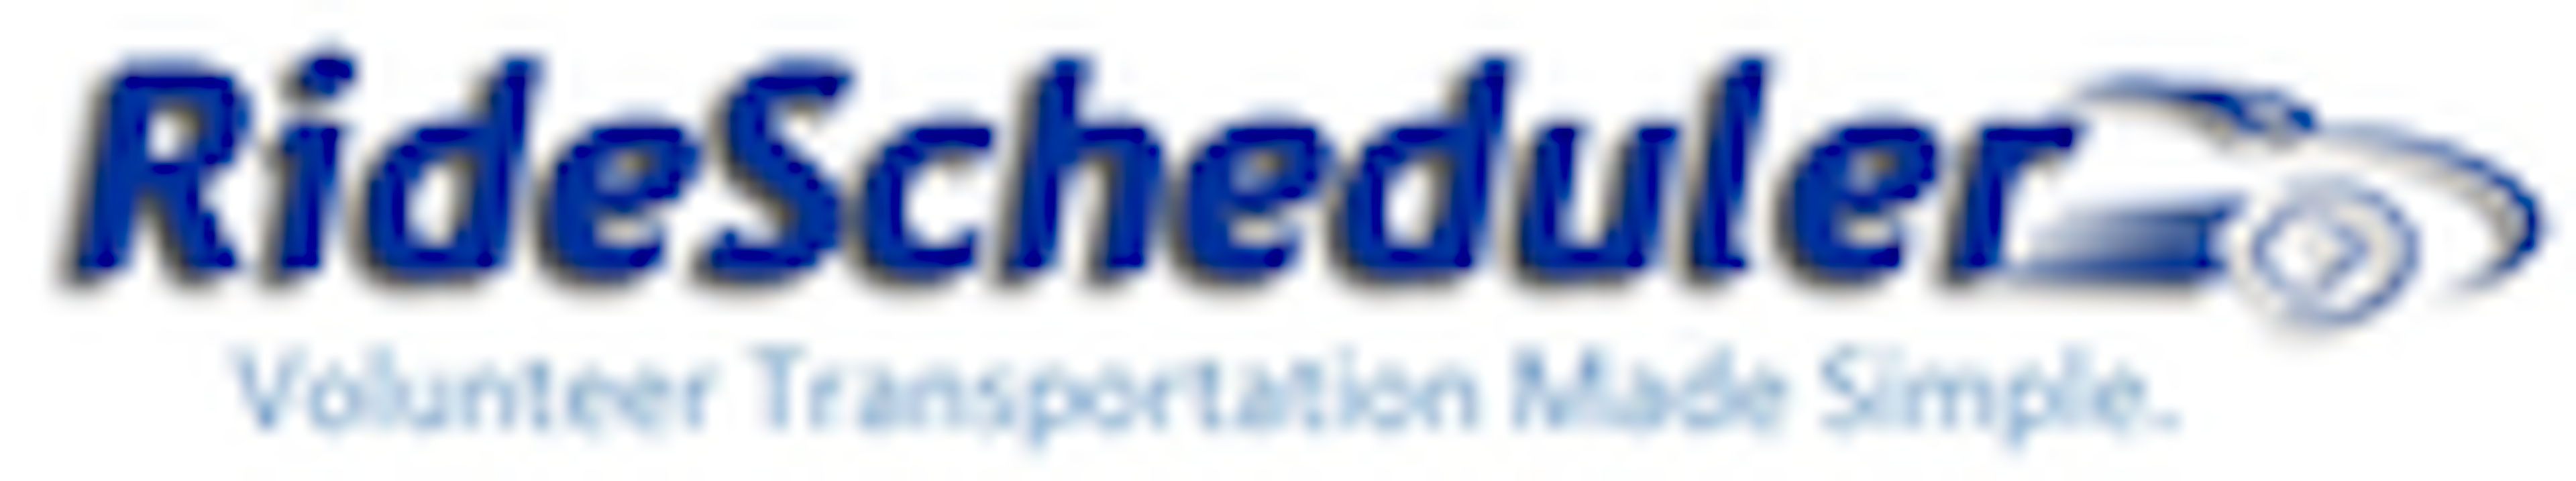 RideScheduler Logo